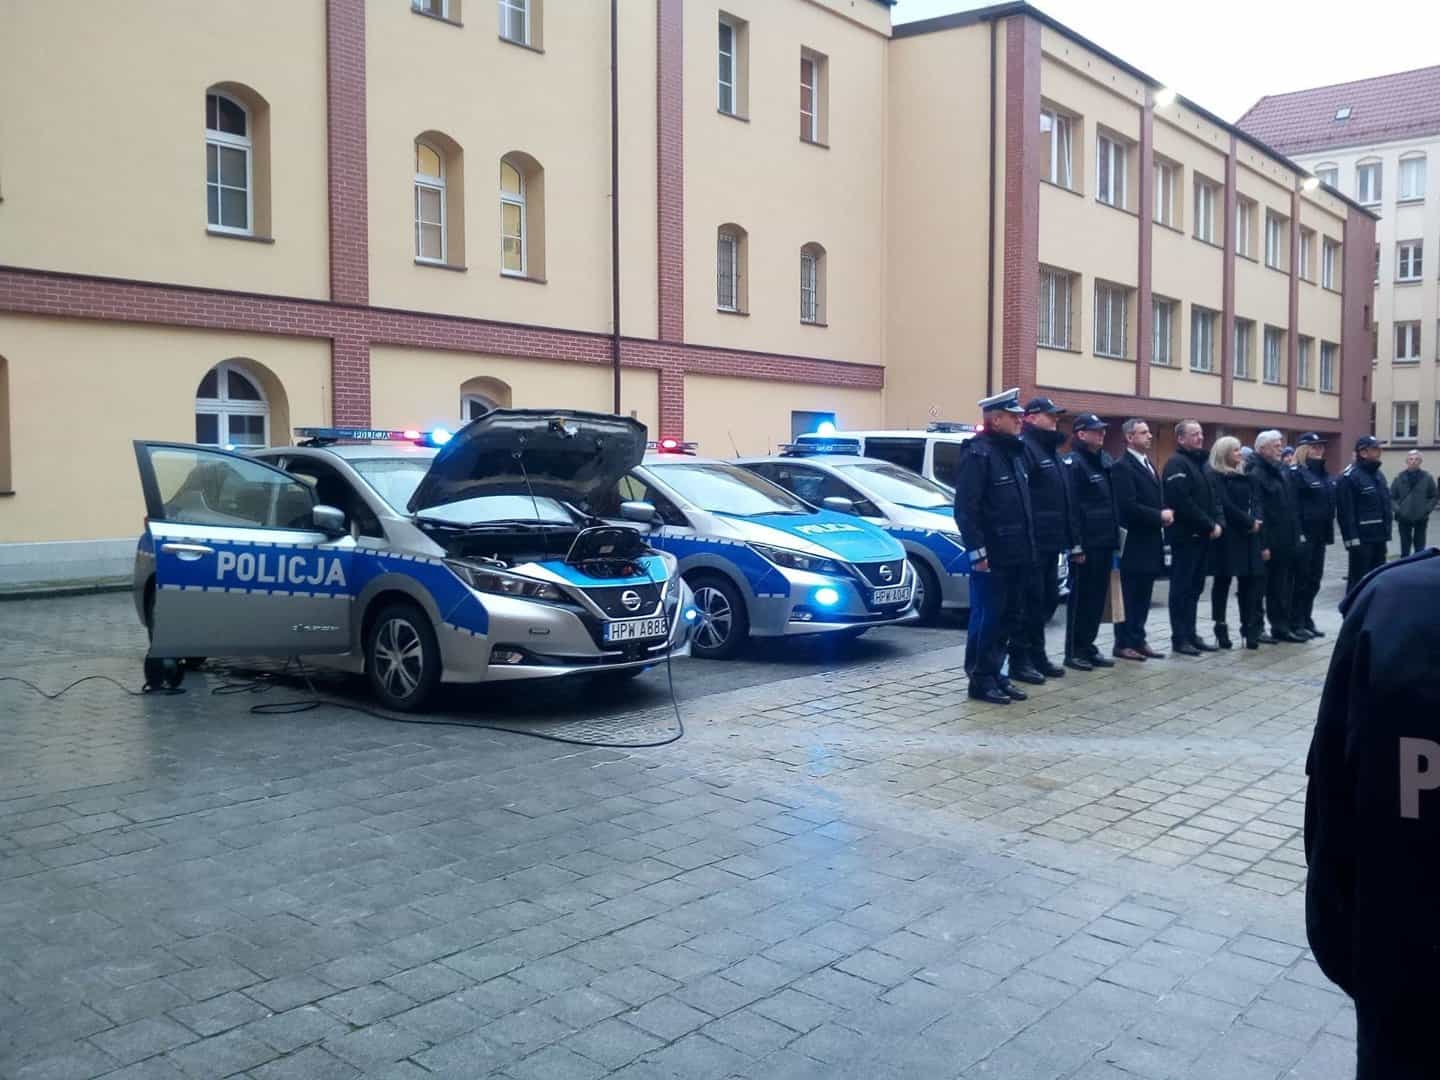 Policja samochody elektryczne